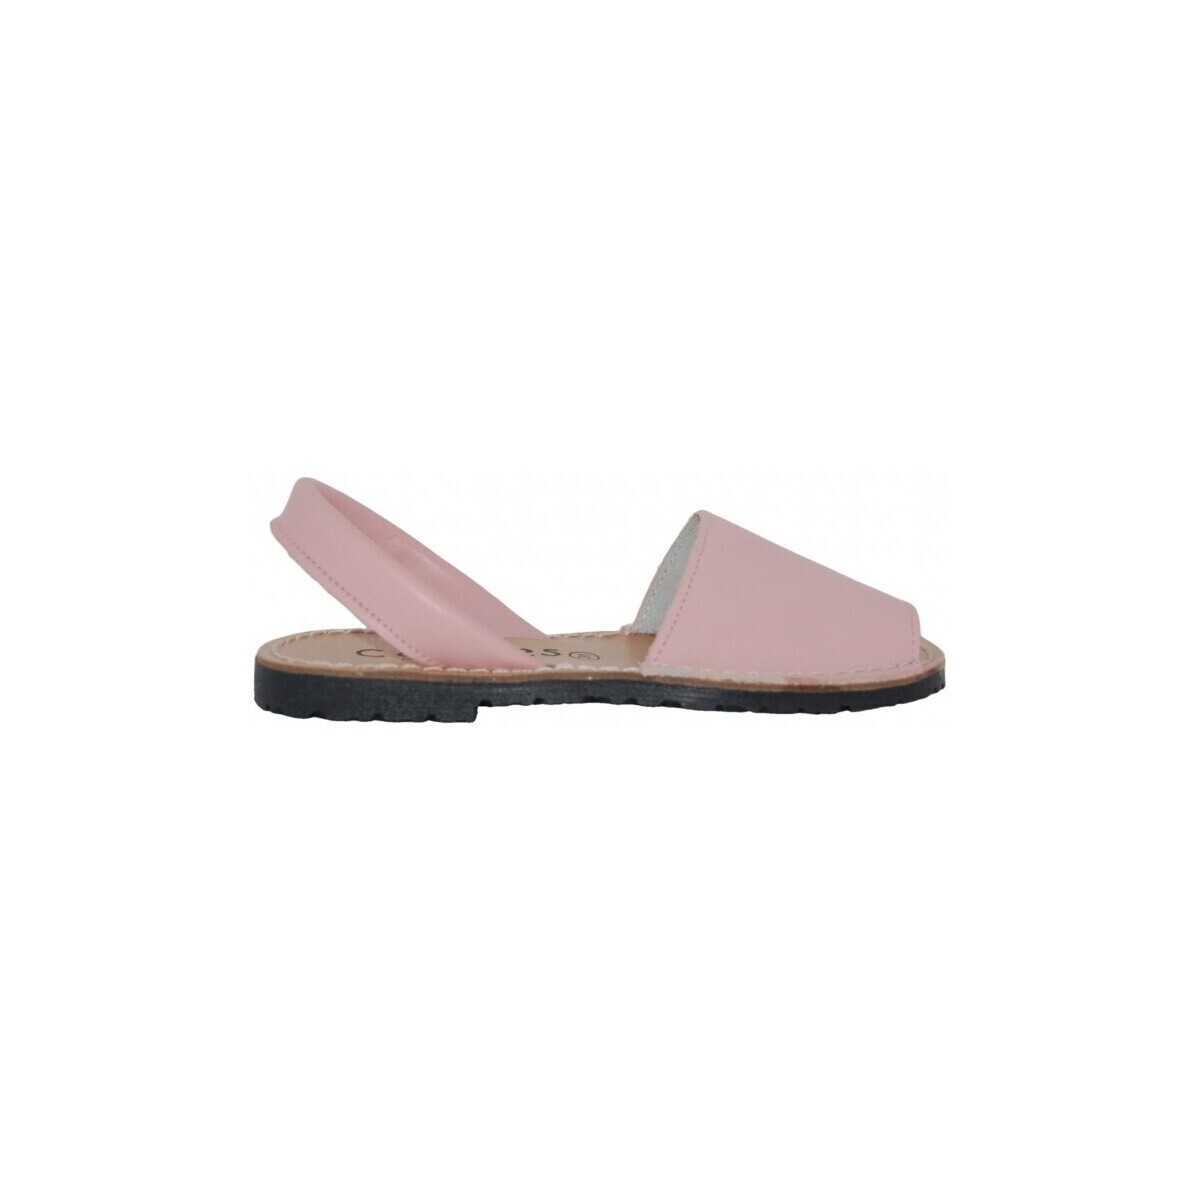 Παπούτσια Σανδάλια / Πέδιλα Colores 11938-27 Ροζ